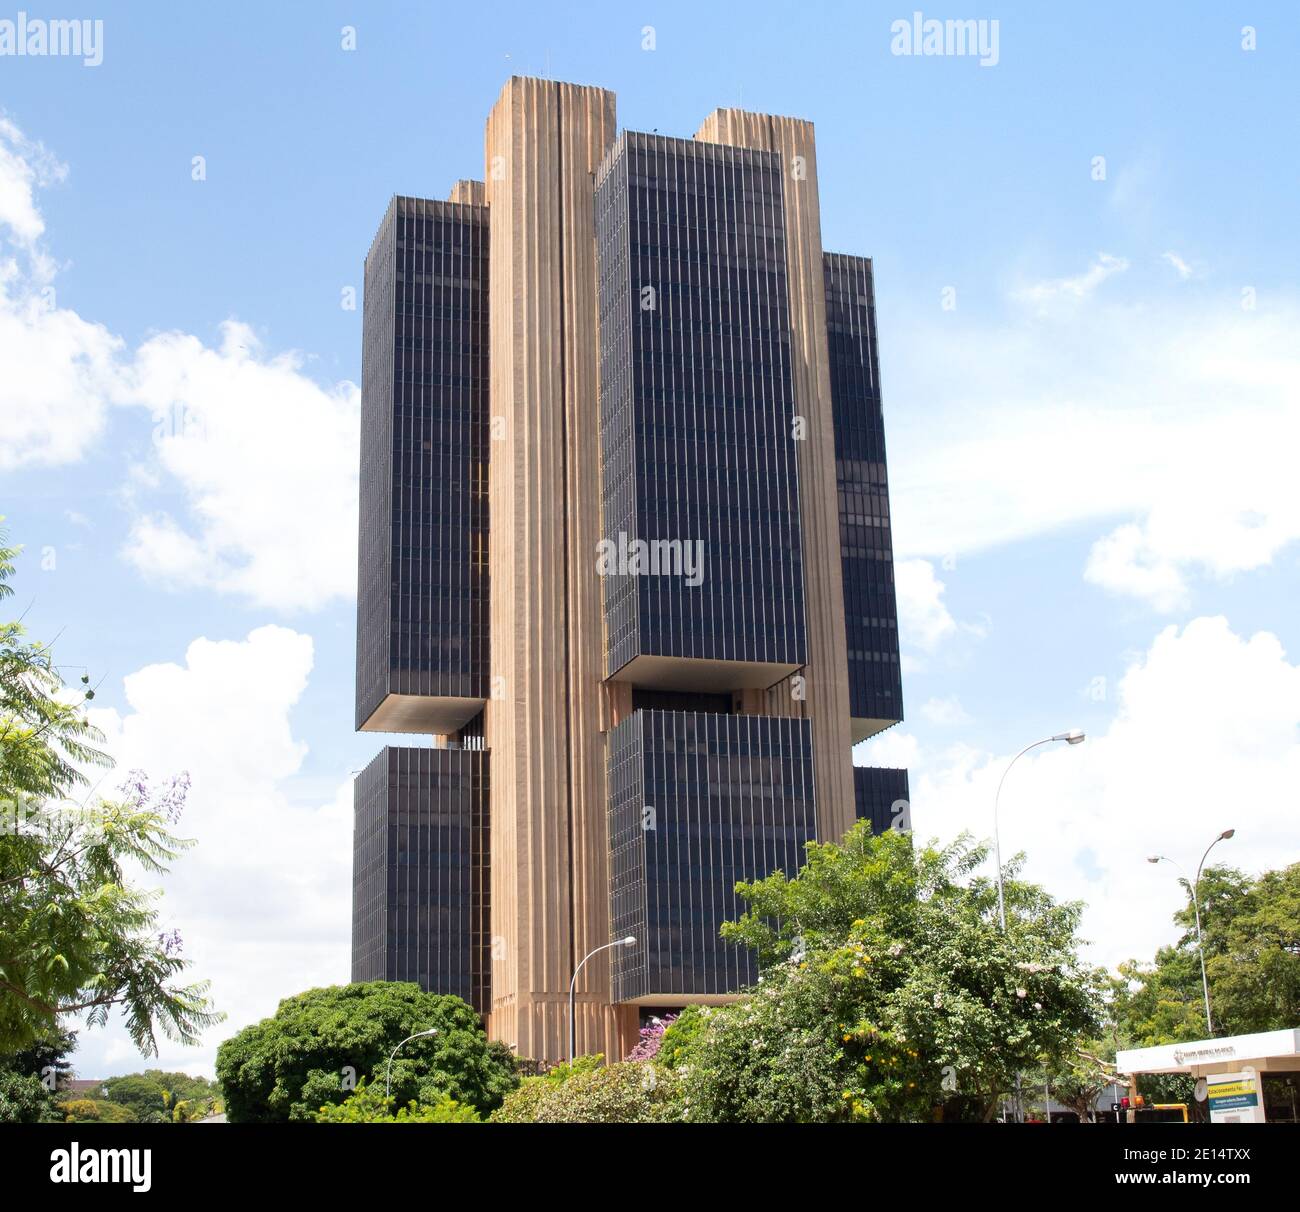 Central Bank of Brazil ( Banco Central do Brasil - BACEN ). Stock Photo